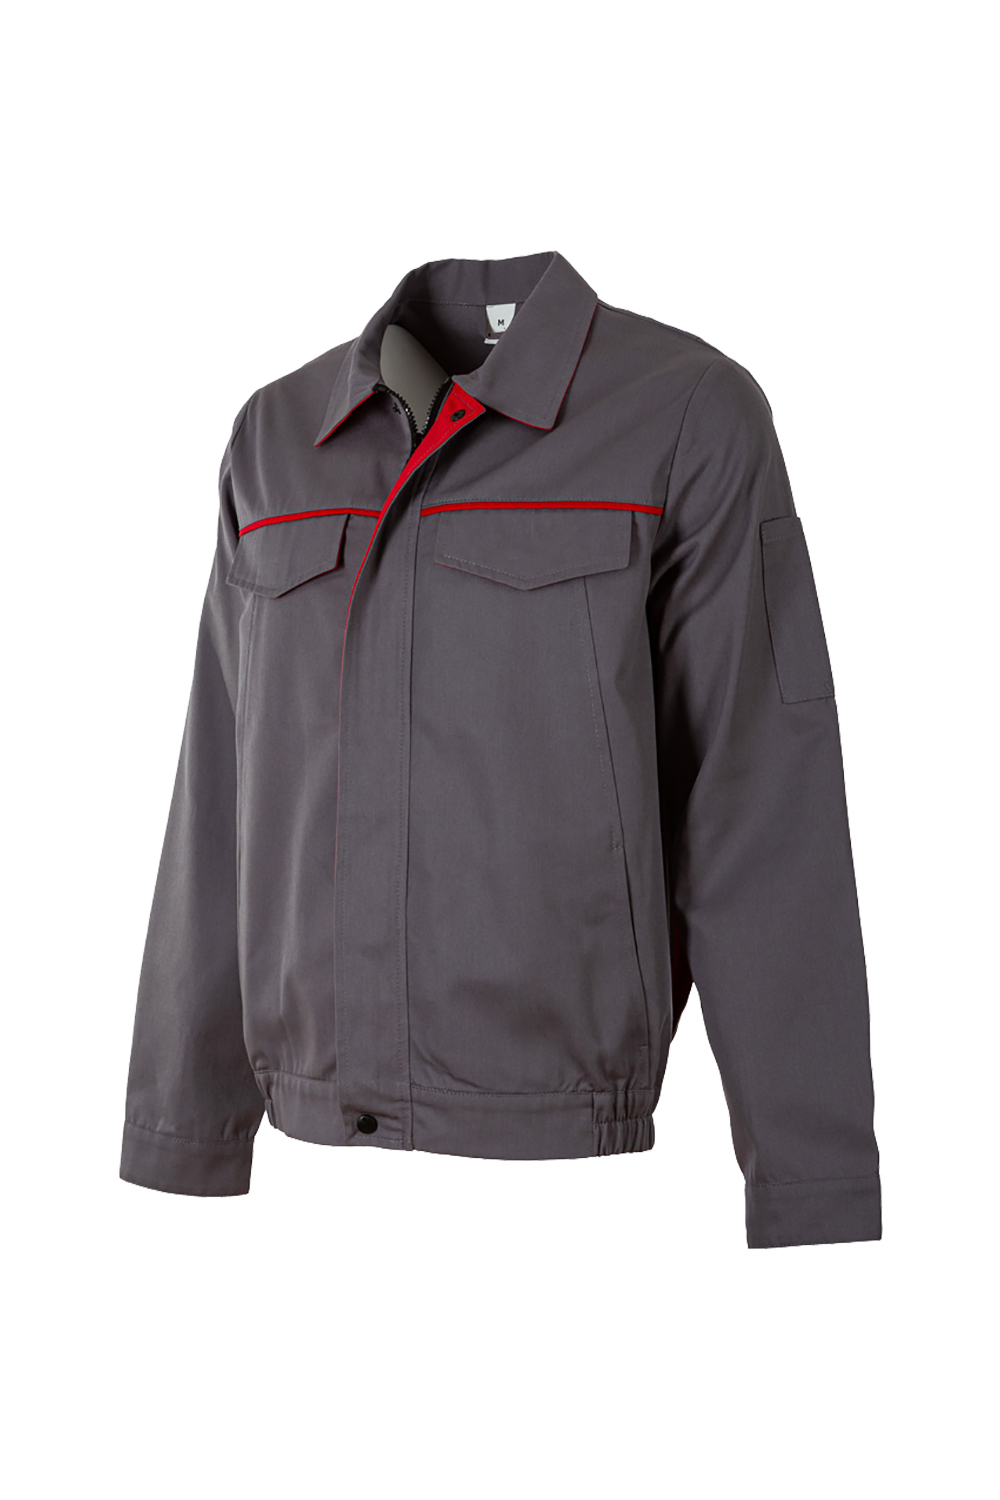 İş Ceketi / İş Ceketi / İş Kıyafetleri